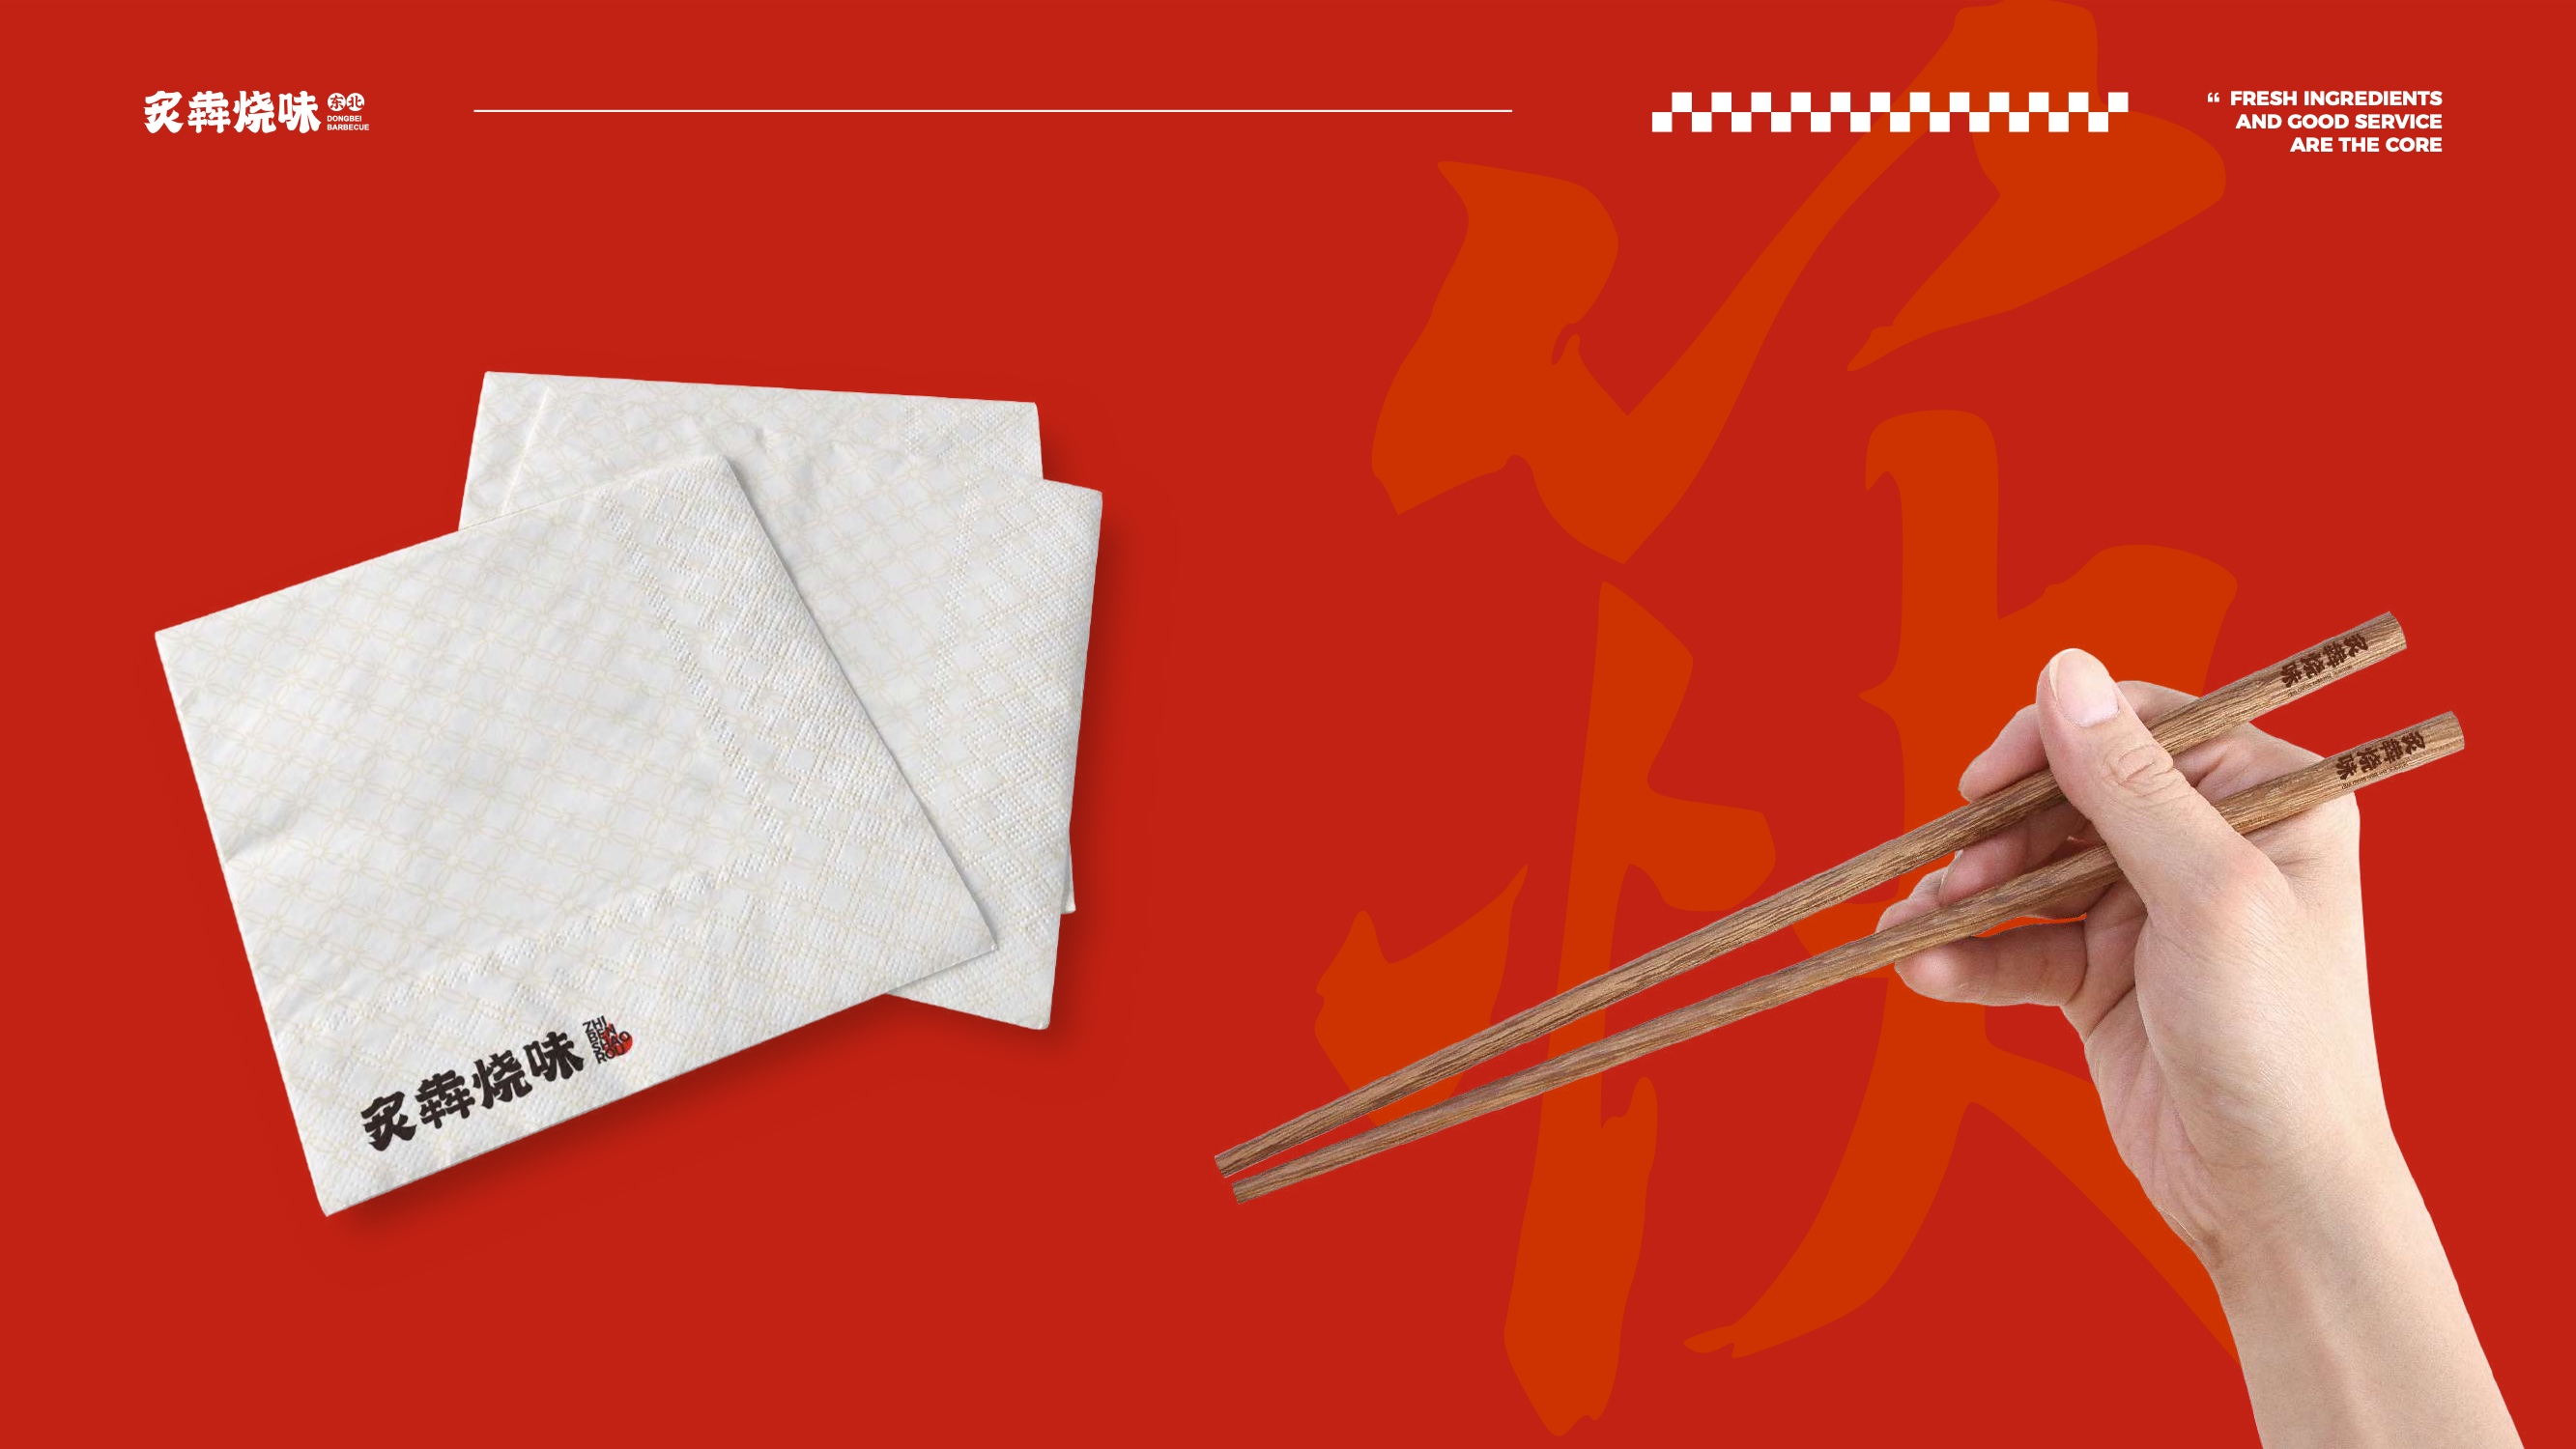 【细节设计】炙奔烧味烤肉餐饮品牌LOGO设计&VI应用